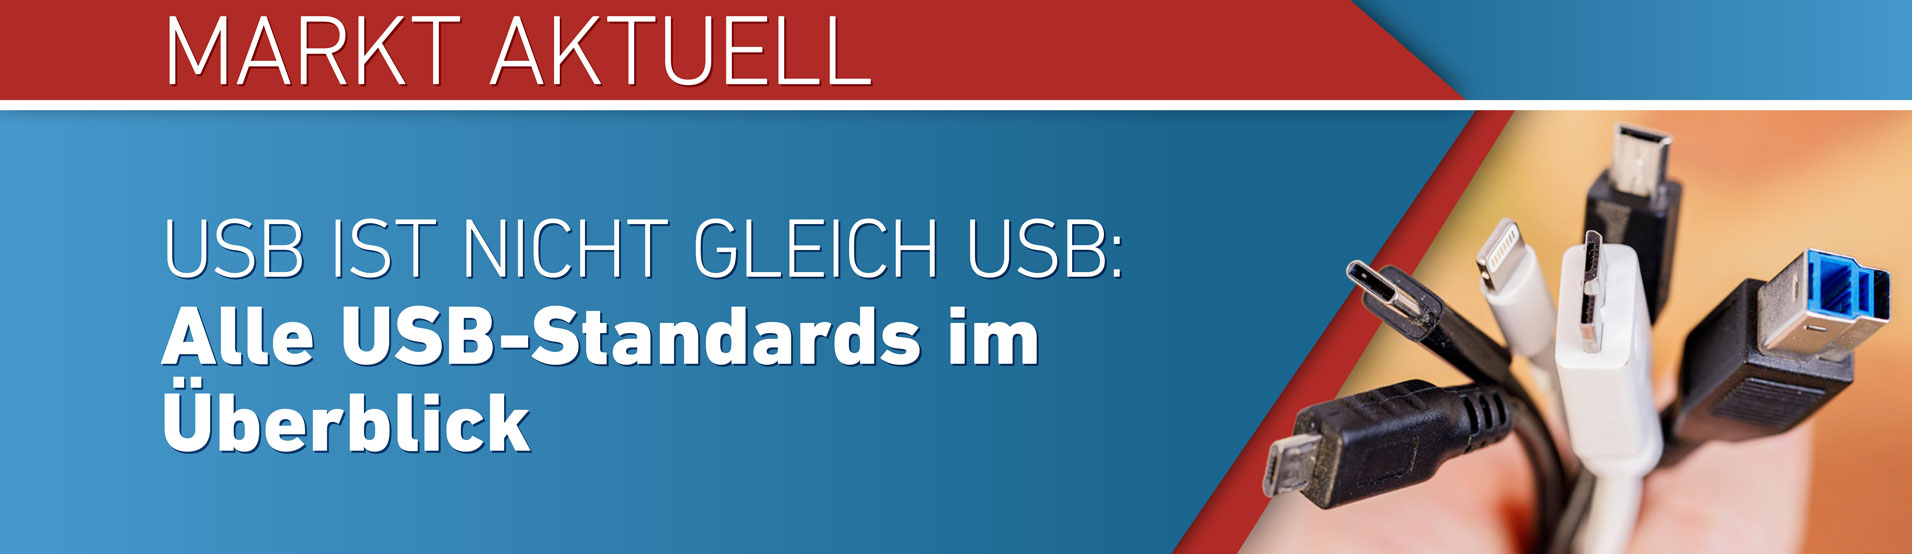 K1 Electronic GmbH Markt Aktuell USB ist nicht gleich USB: Alle USB-Standards im Überblick